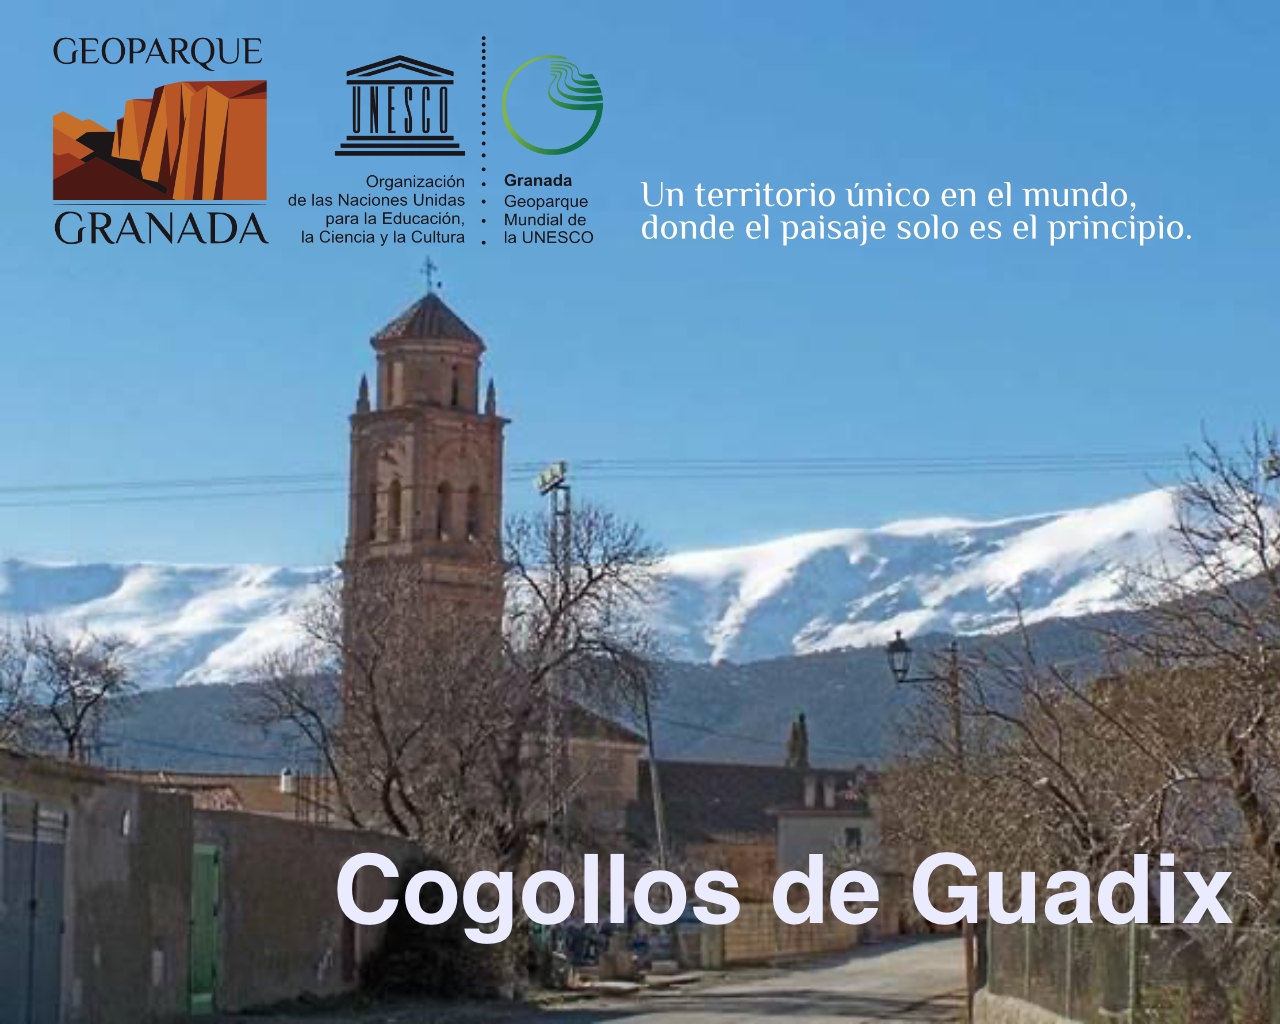 EXPO ITINERANTE COGOLLOS GUADIX - Exposición itinerante Geoparque de Granada COGOLLOS DE GUADIX - Geoparque de Granada